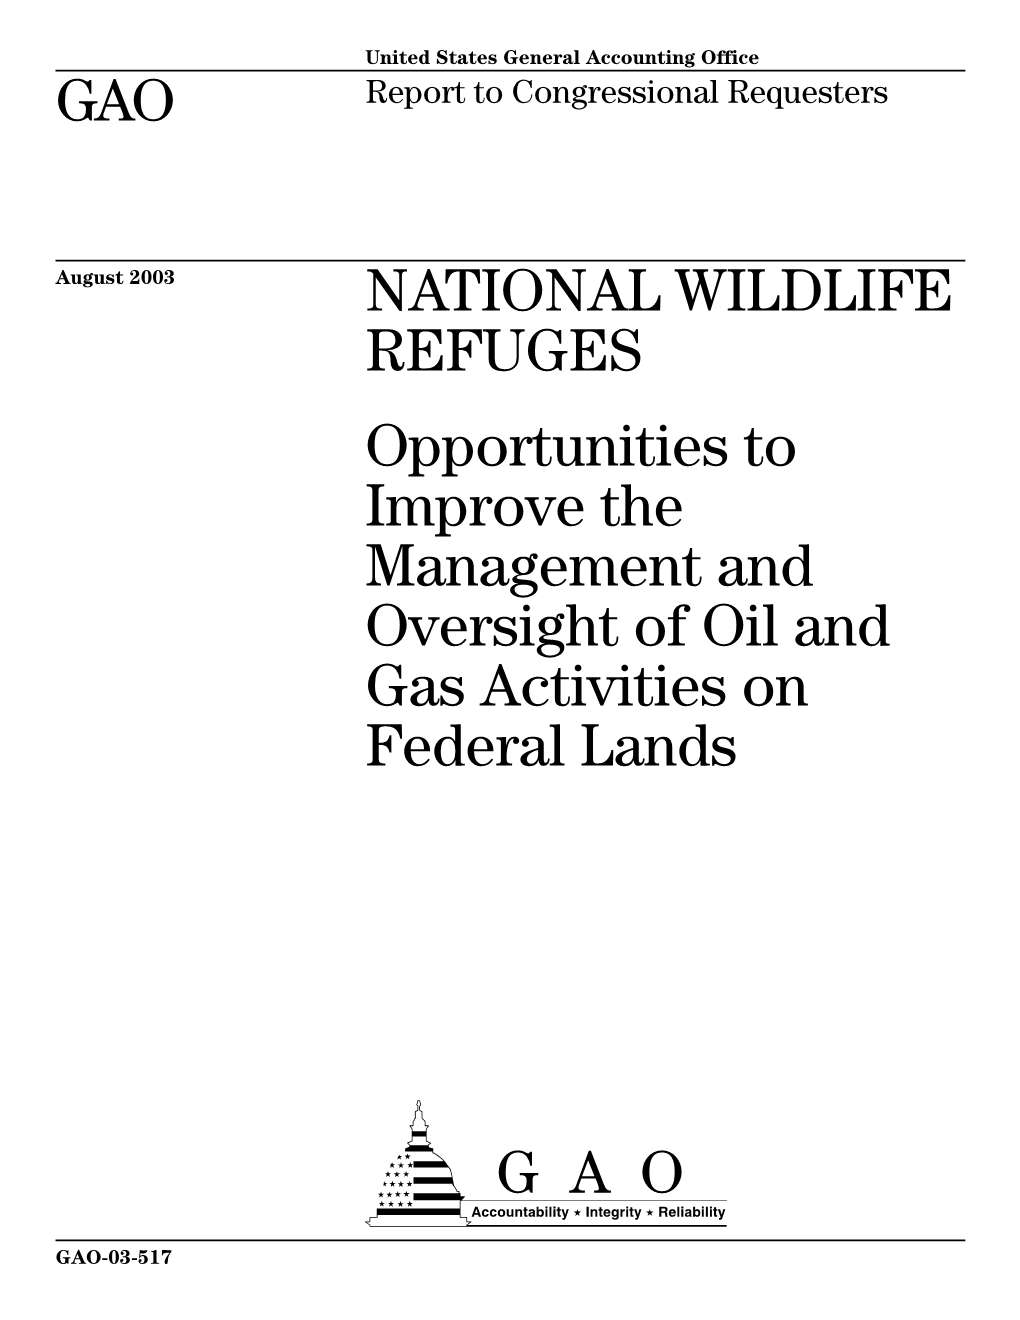 GAO-03-517 National Wildlife Refuges